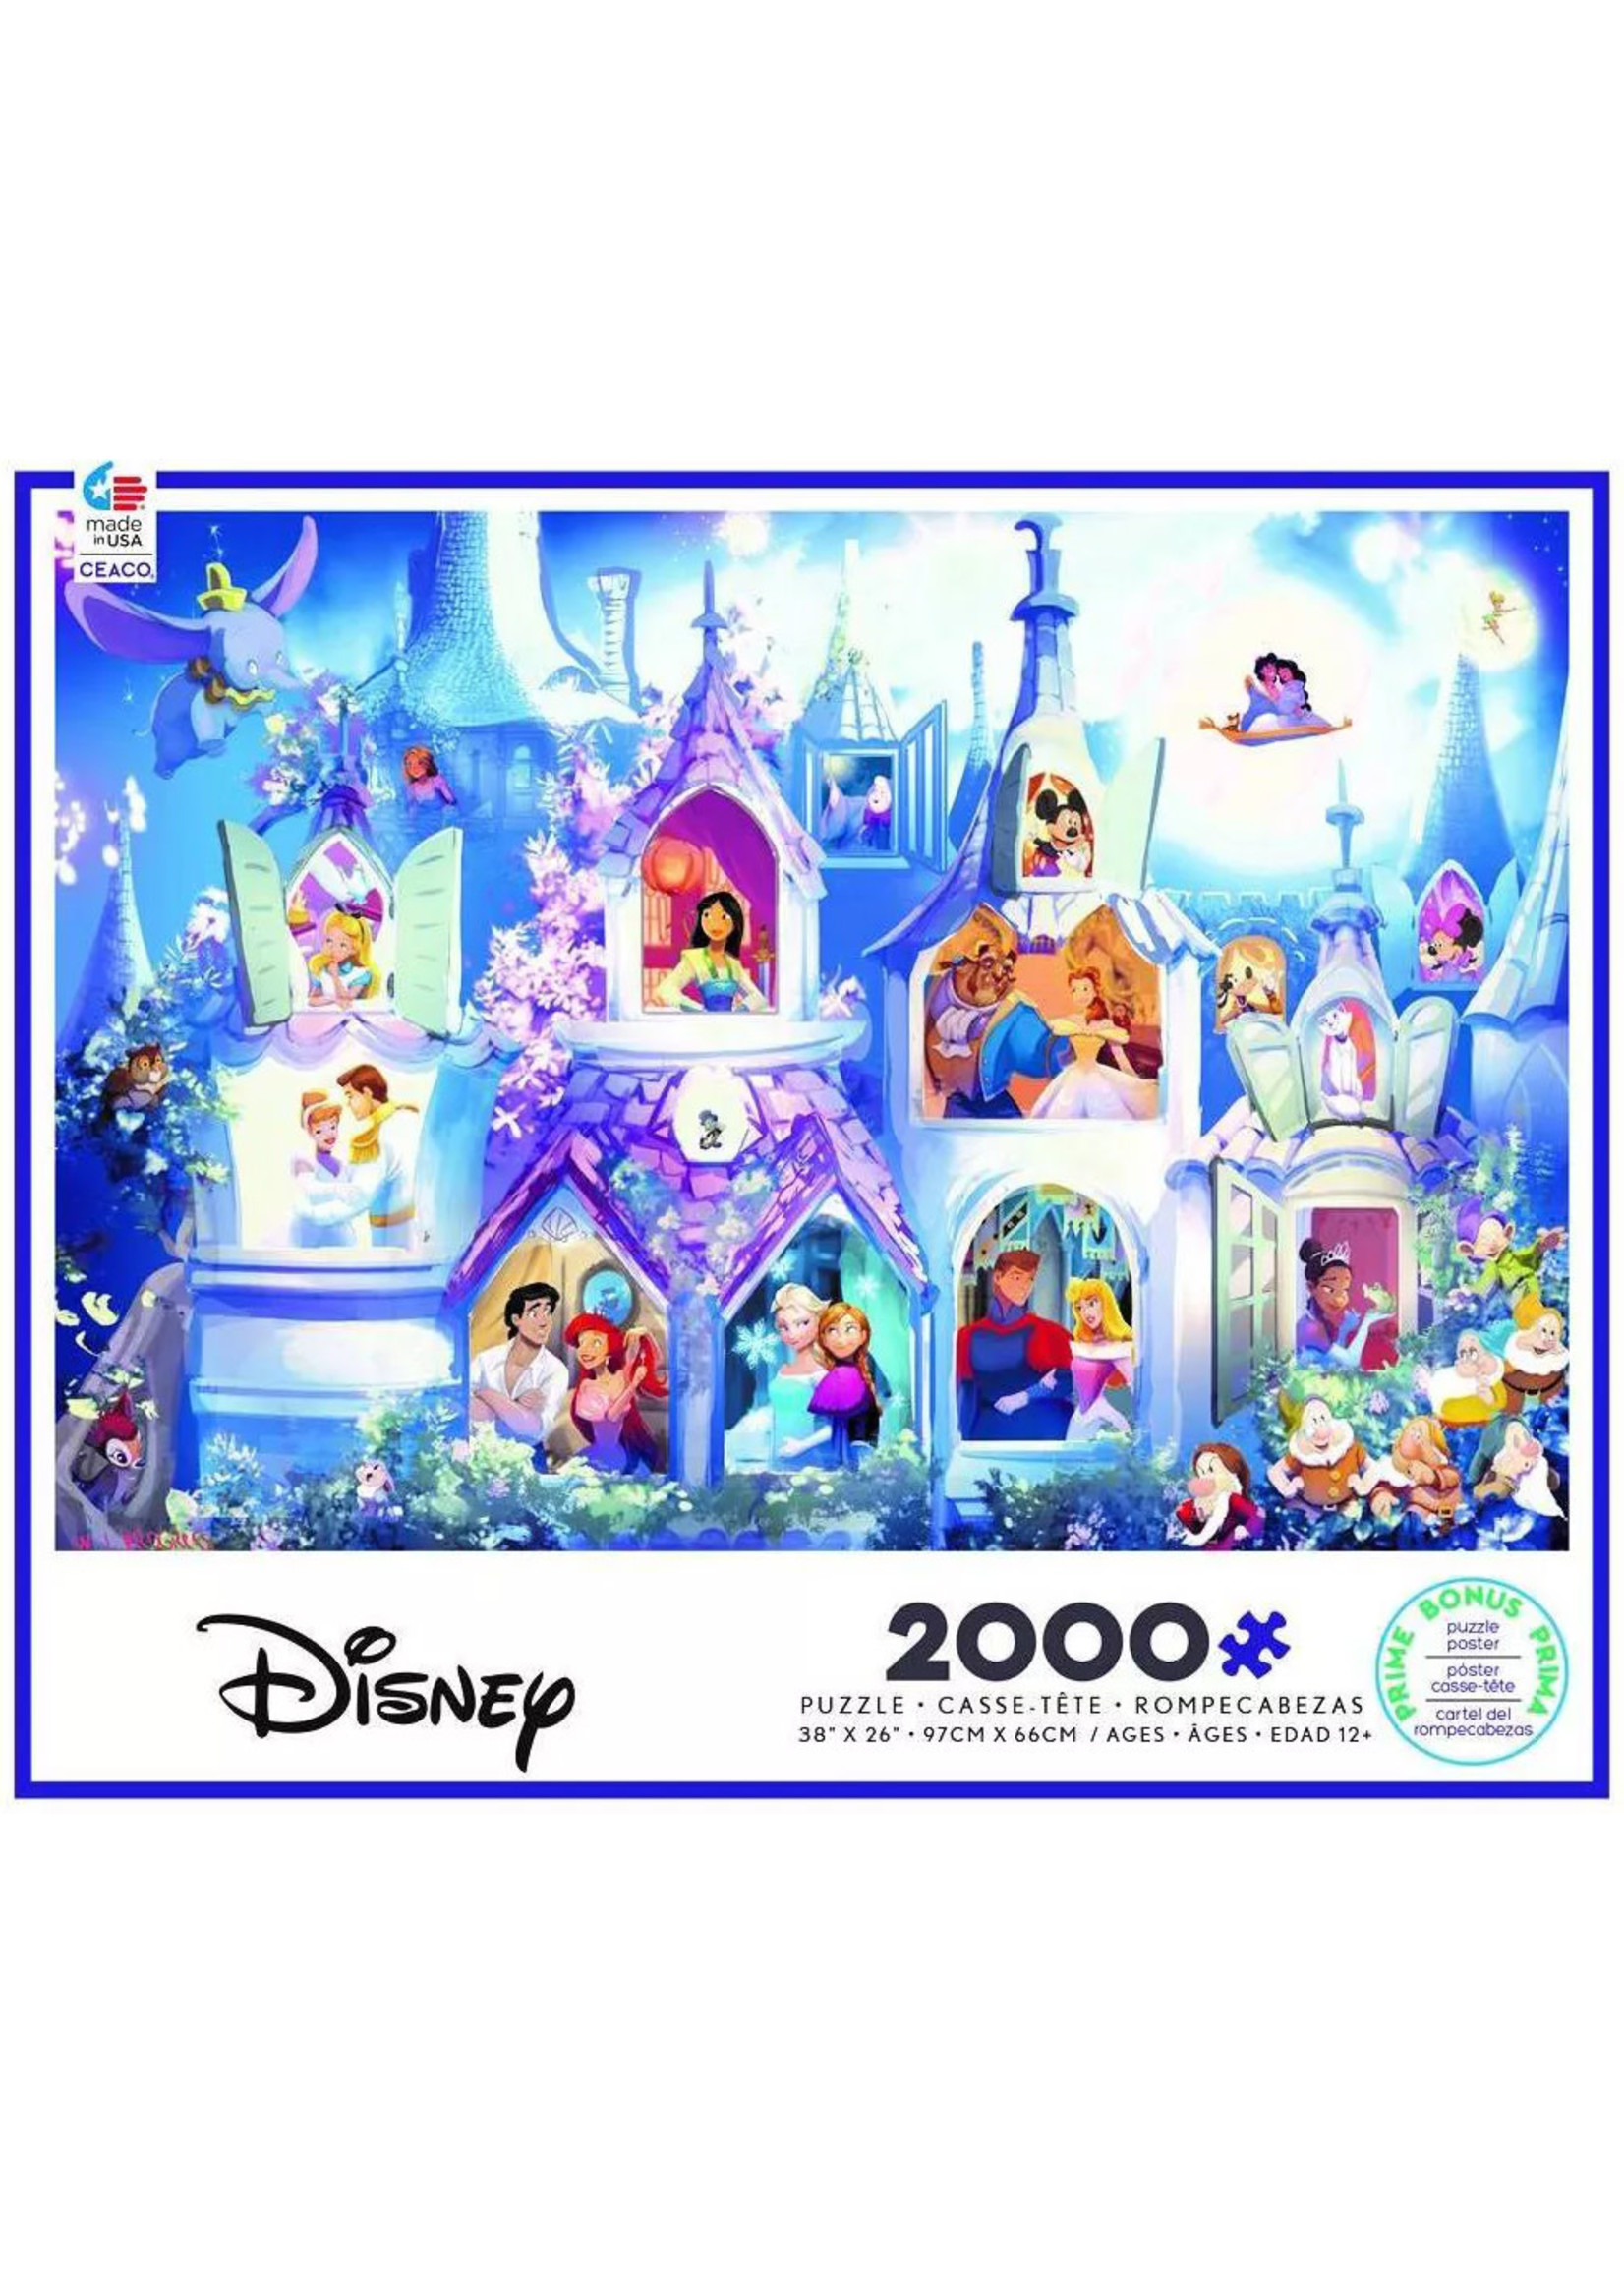 Disney Jigsaw 2000 Piece Puzzle New